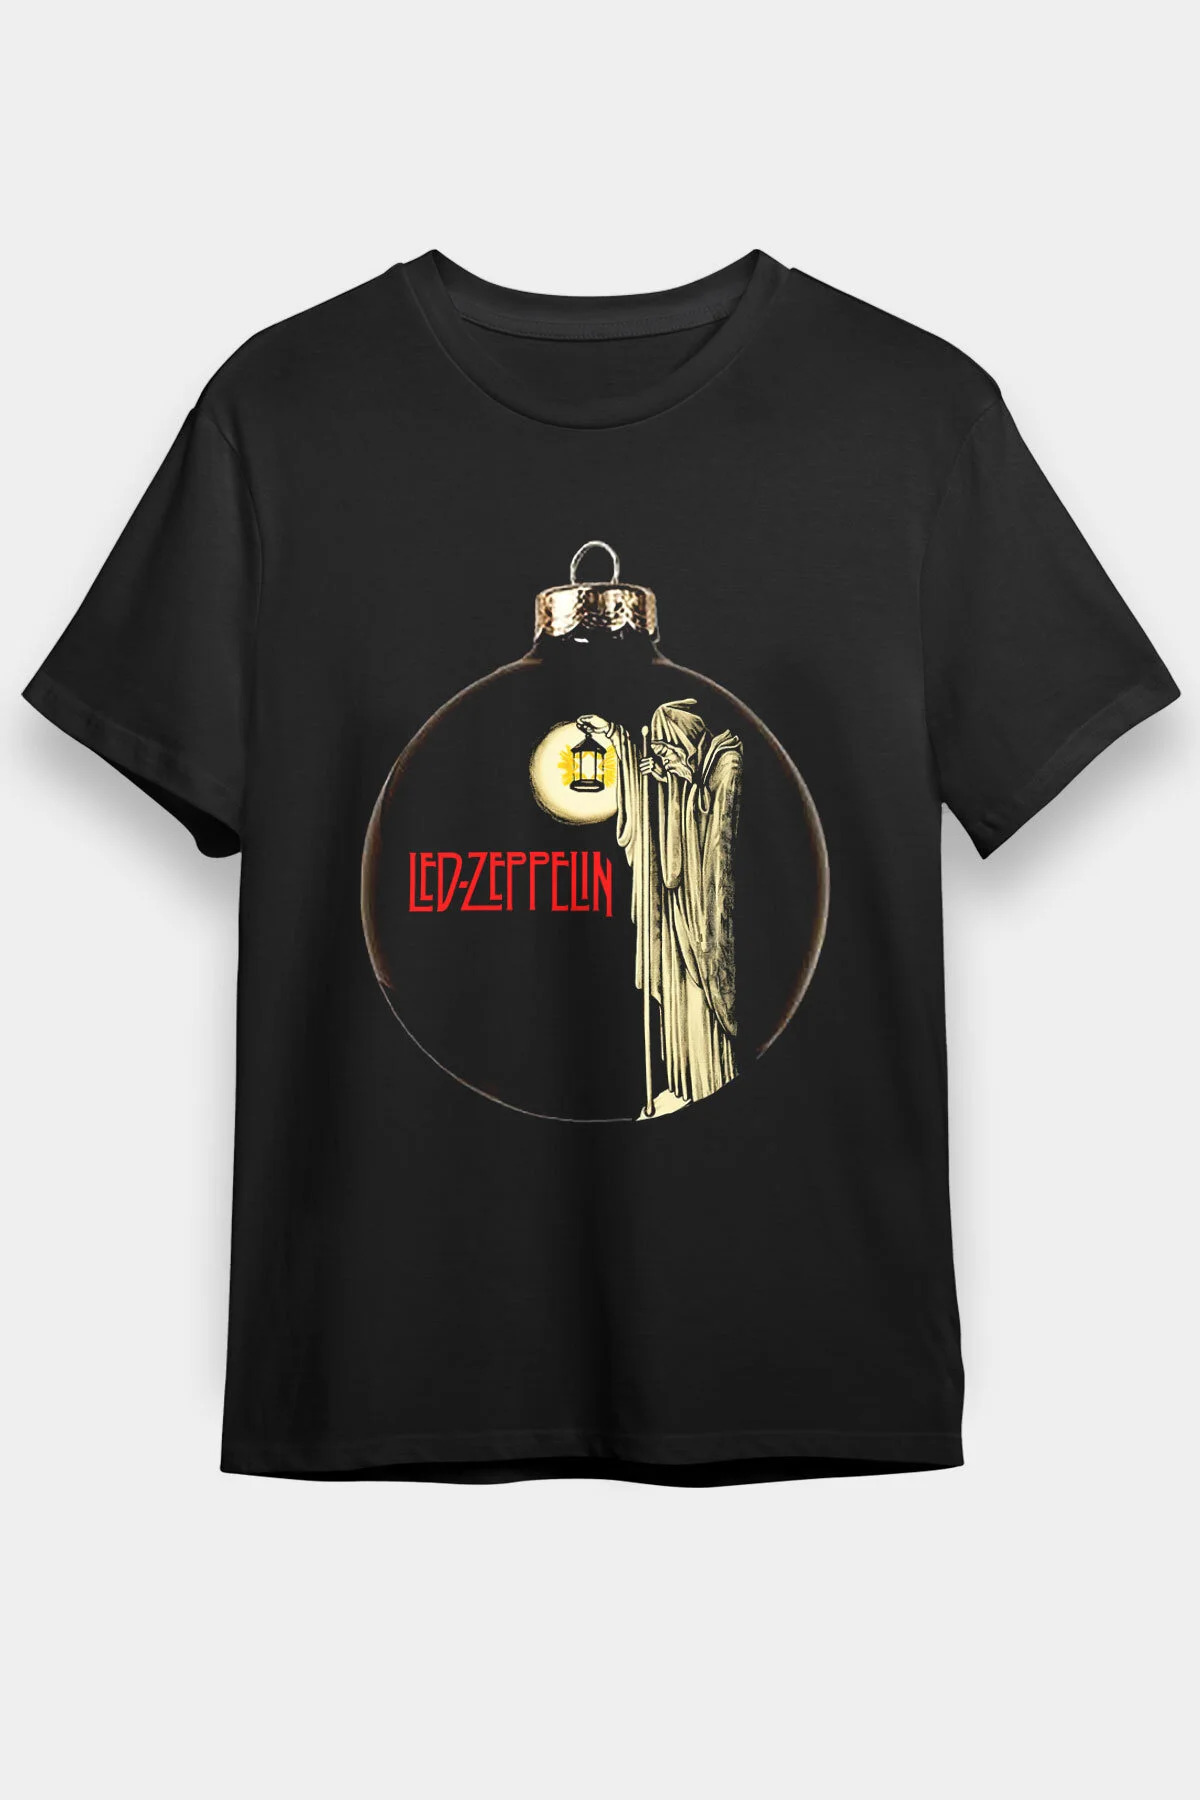 Led Zeppelin , Music Band ,Unisex Tshirt 17